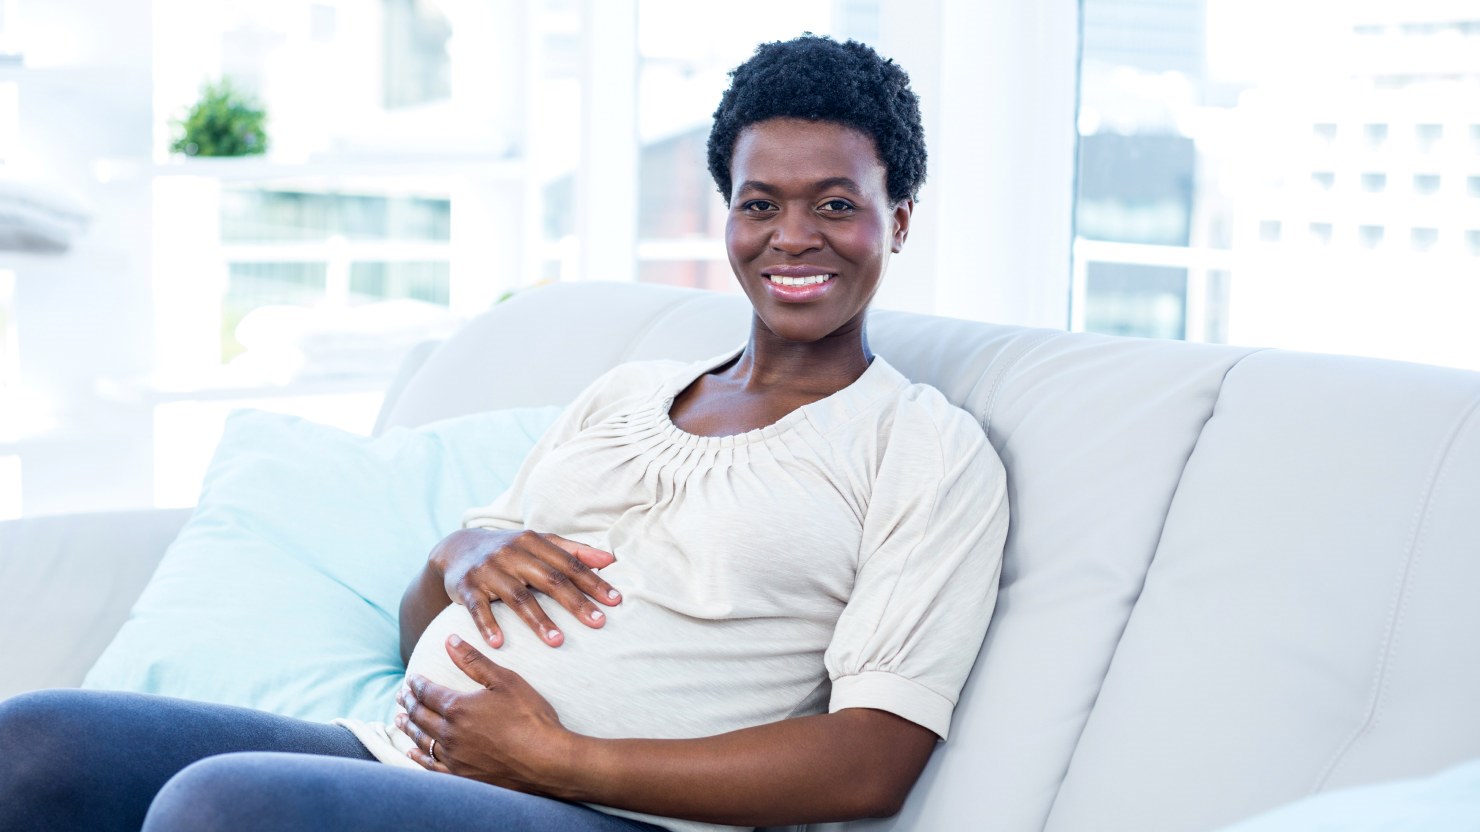 en gravid kvinna sitter i en soffa och håller om sin mage, hon ler och ser lycklig ut